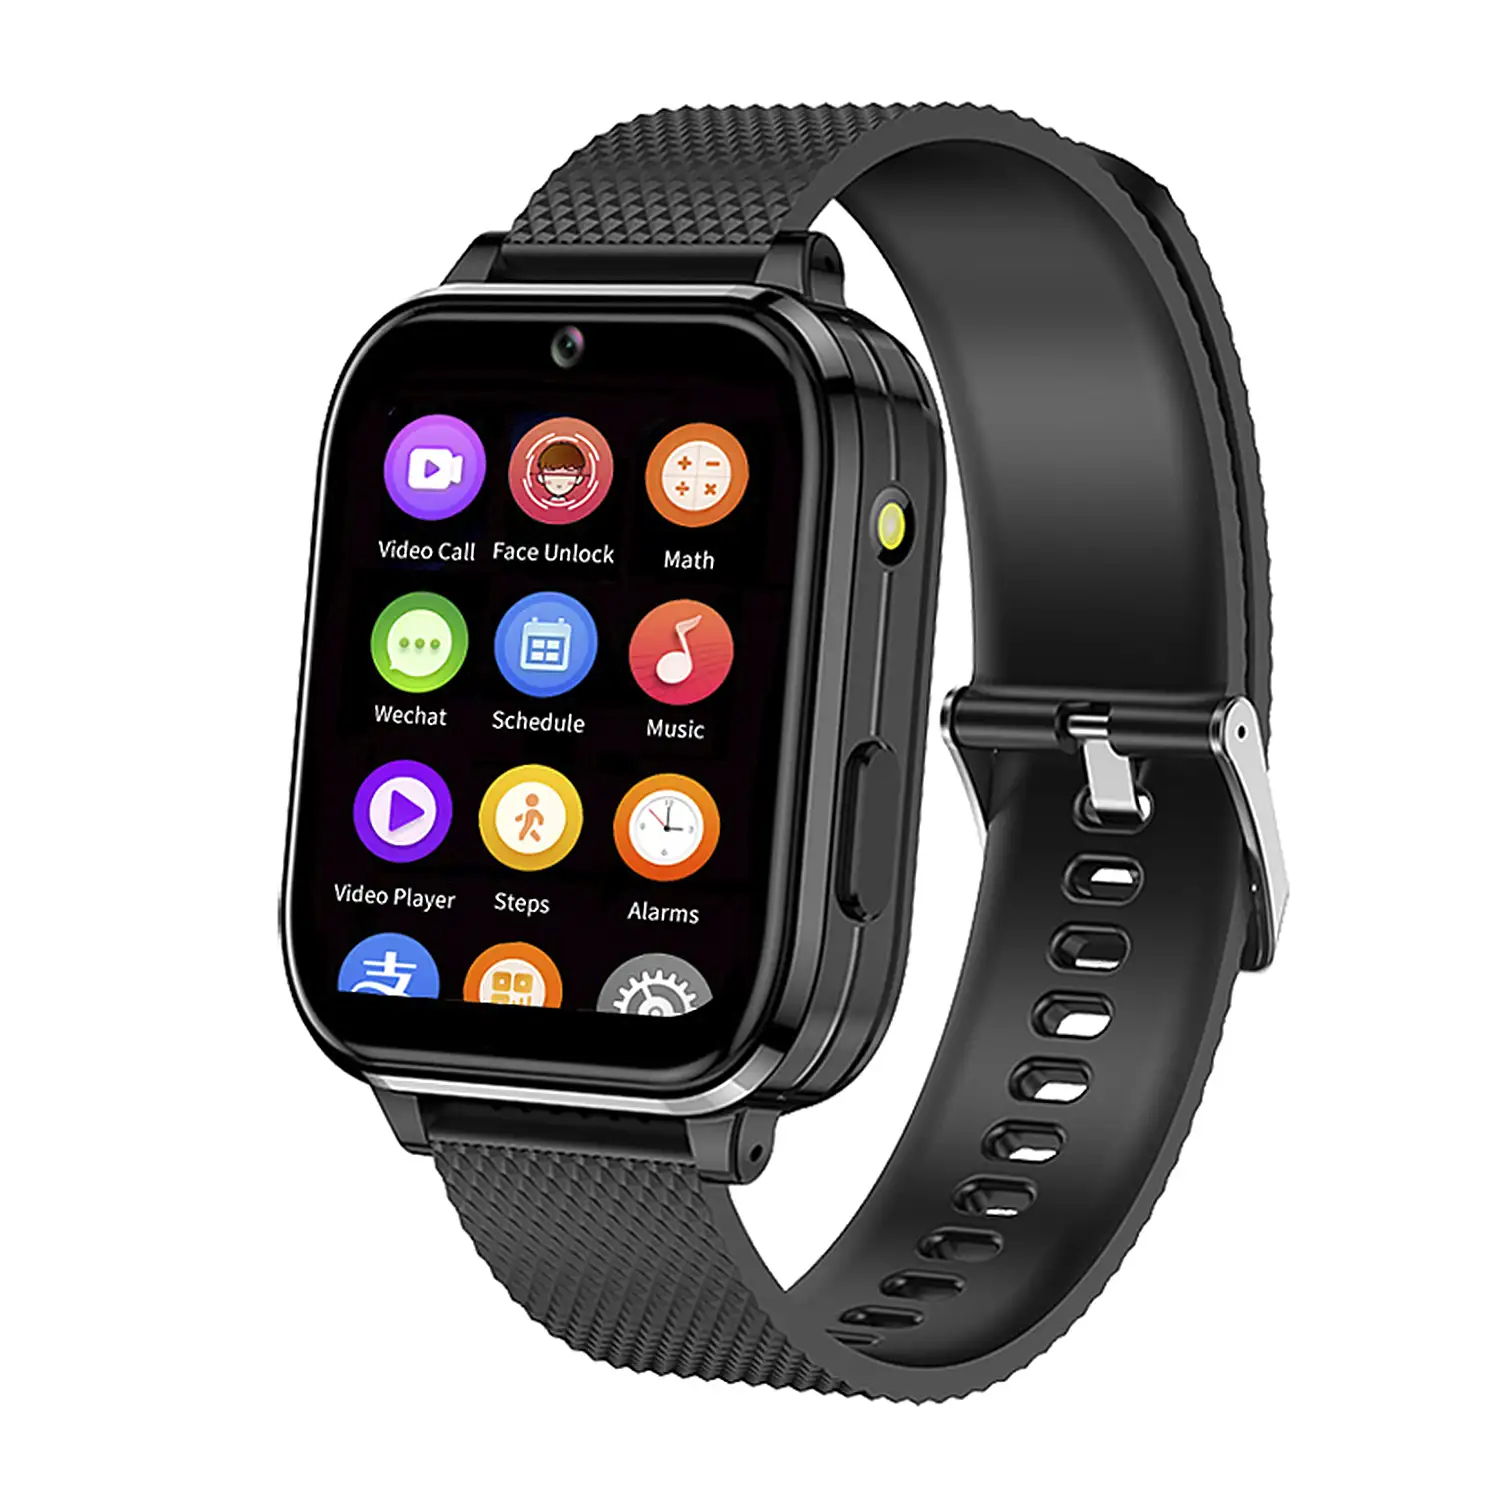 Smartwatch Phone T36 4G con SO Android incorporado. Funciones avanzadas y localizador GPS, Wifi y LBS.